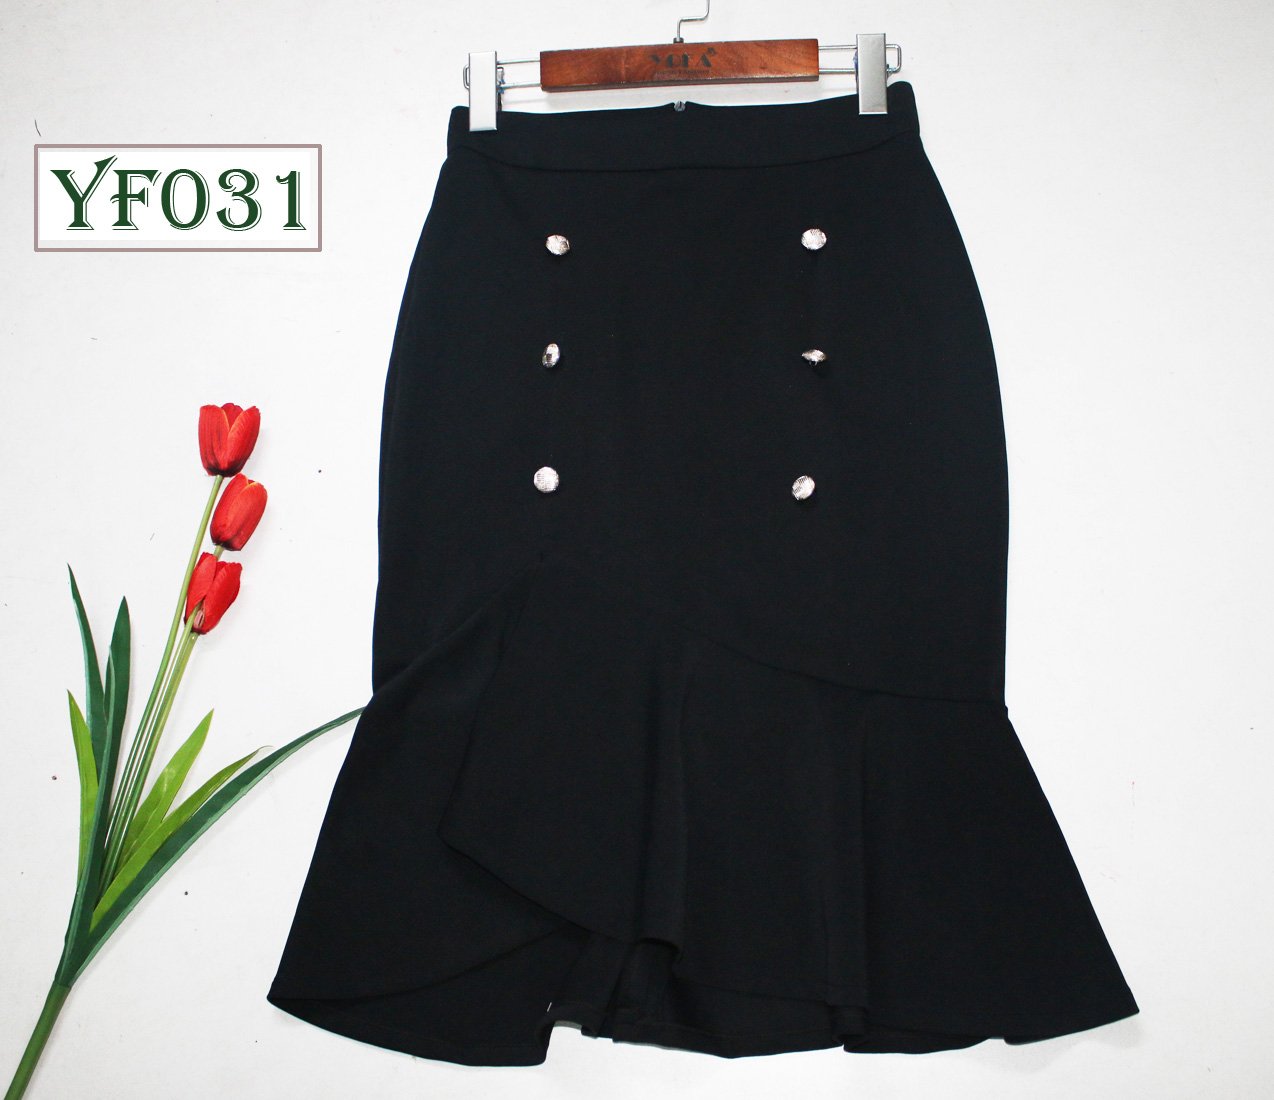 39027B62 - Chân váy Carolan đen, chân đuôi cá can ren lưới.. Thời trang nữ  Toson